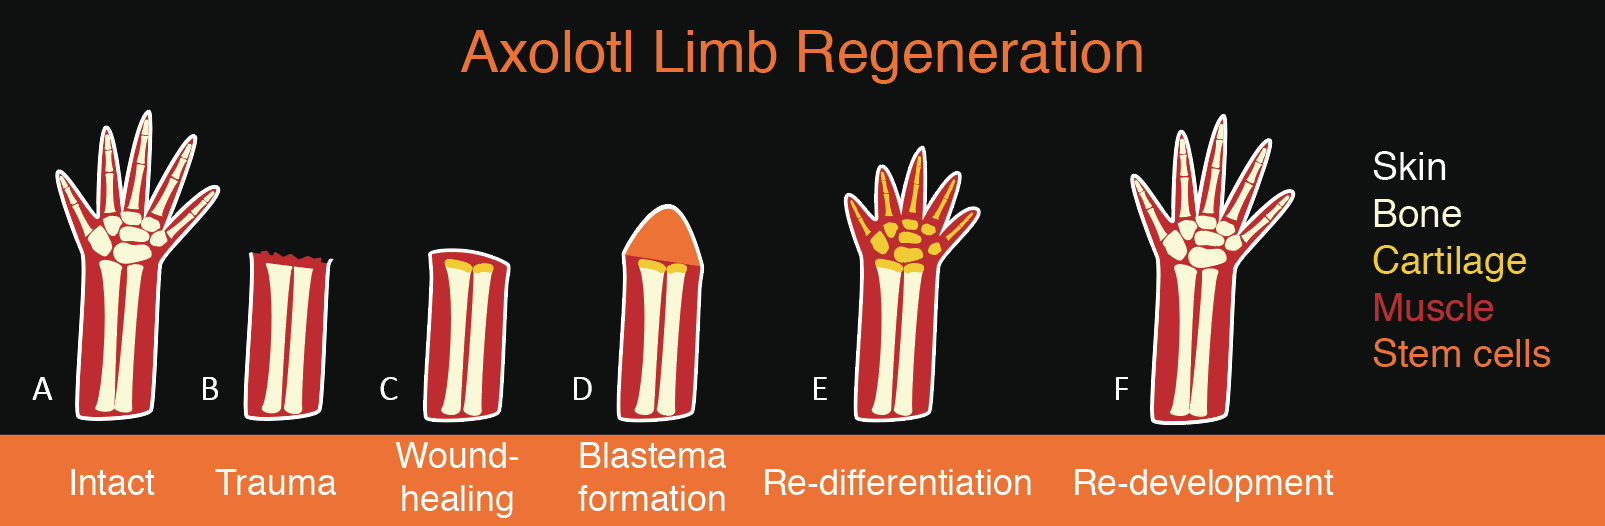 Digital illustration showing regeneration of axolotls limb